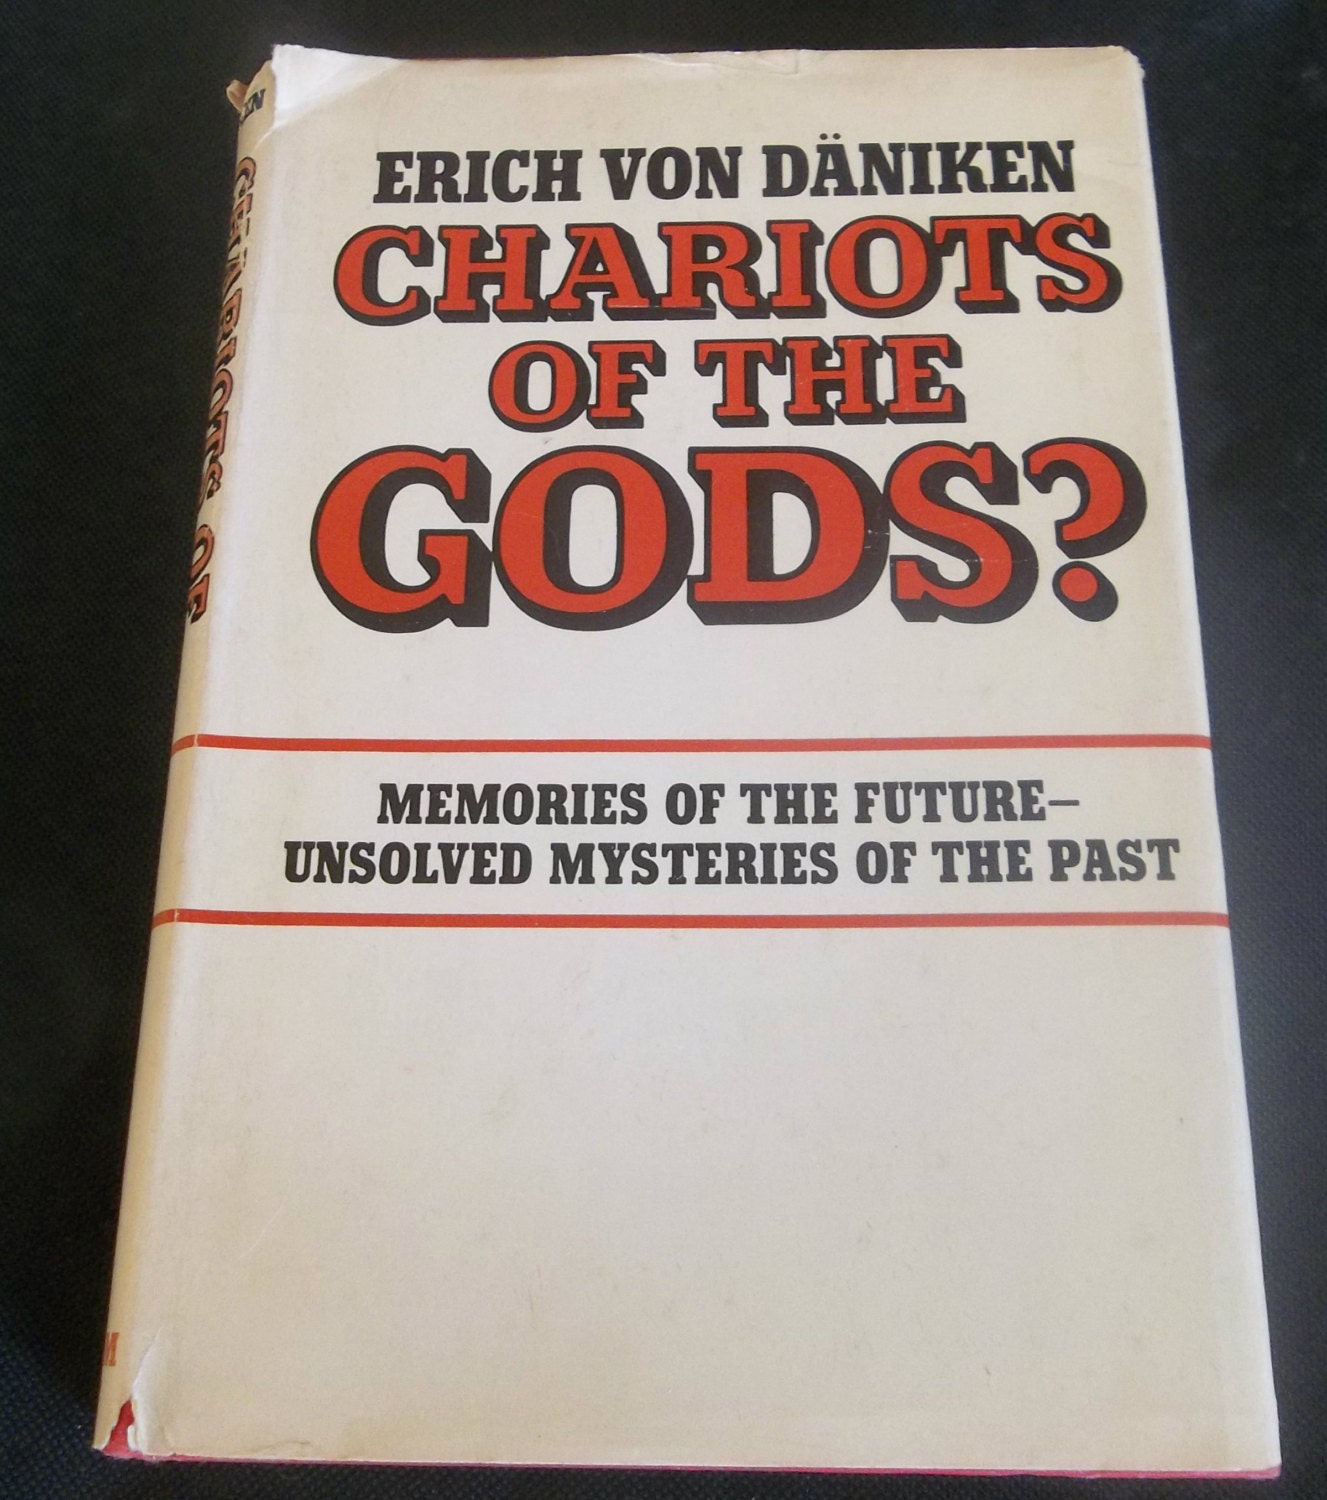 chariots of fire book by erich von daniken